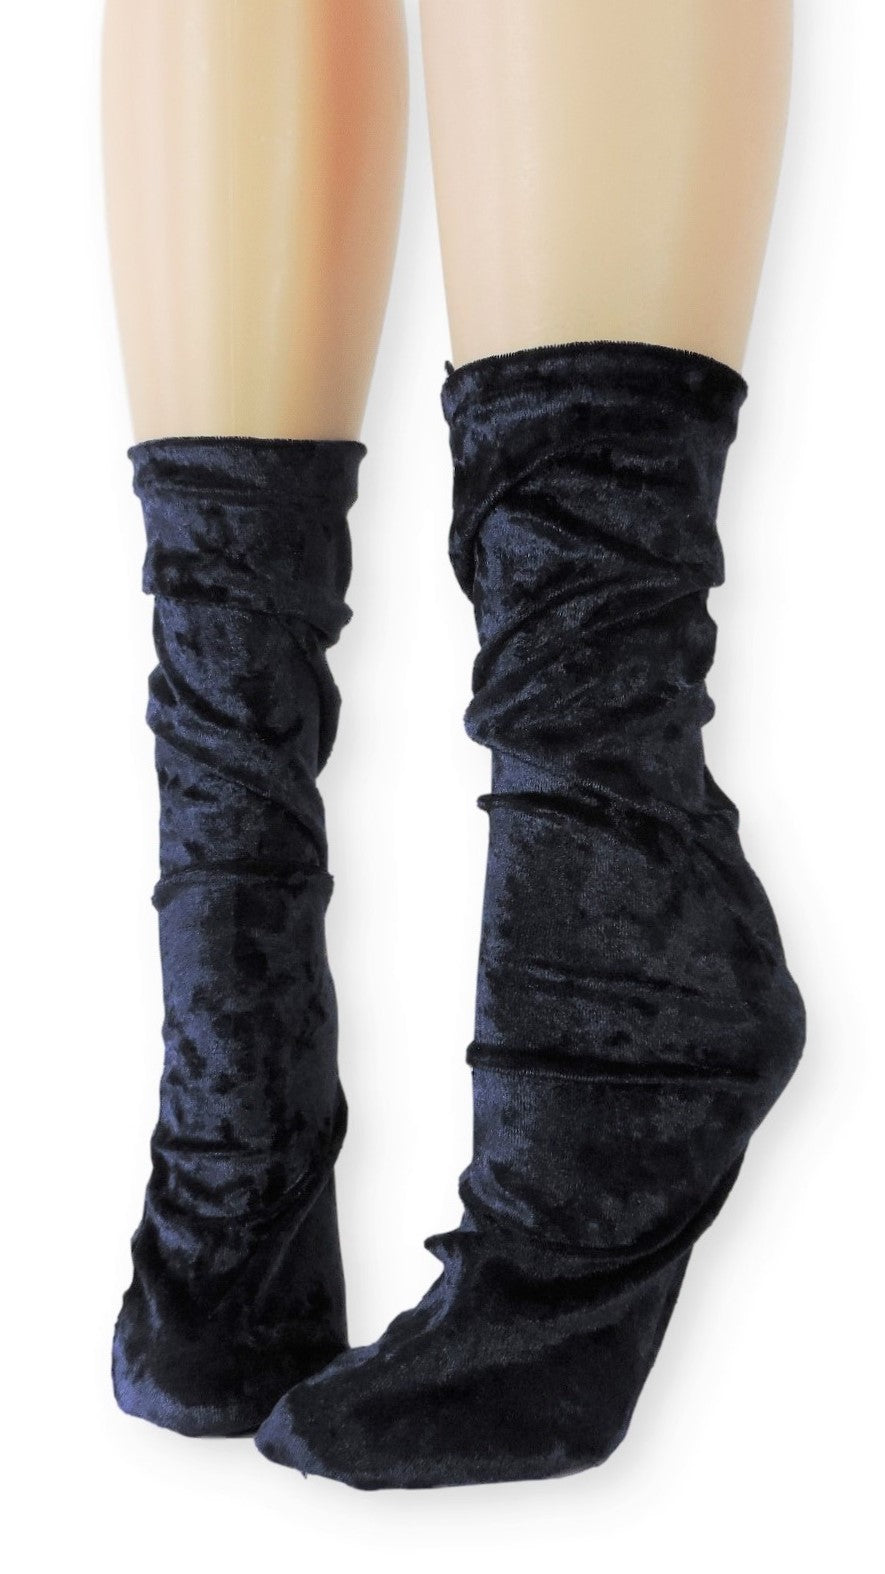 Violet Crushed Velvet Socks - Global Trendz Fashion®